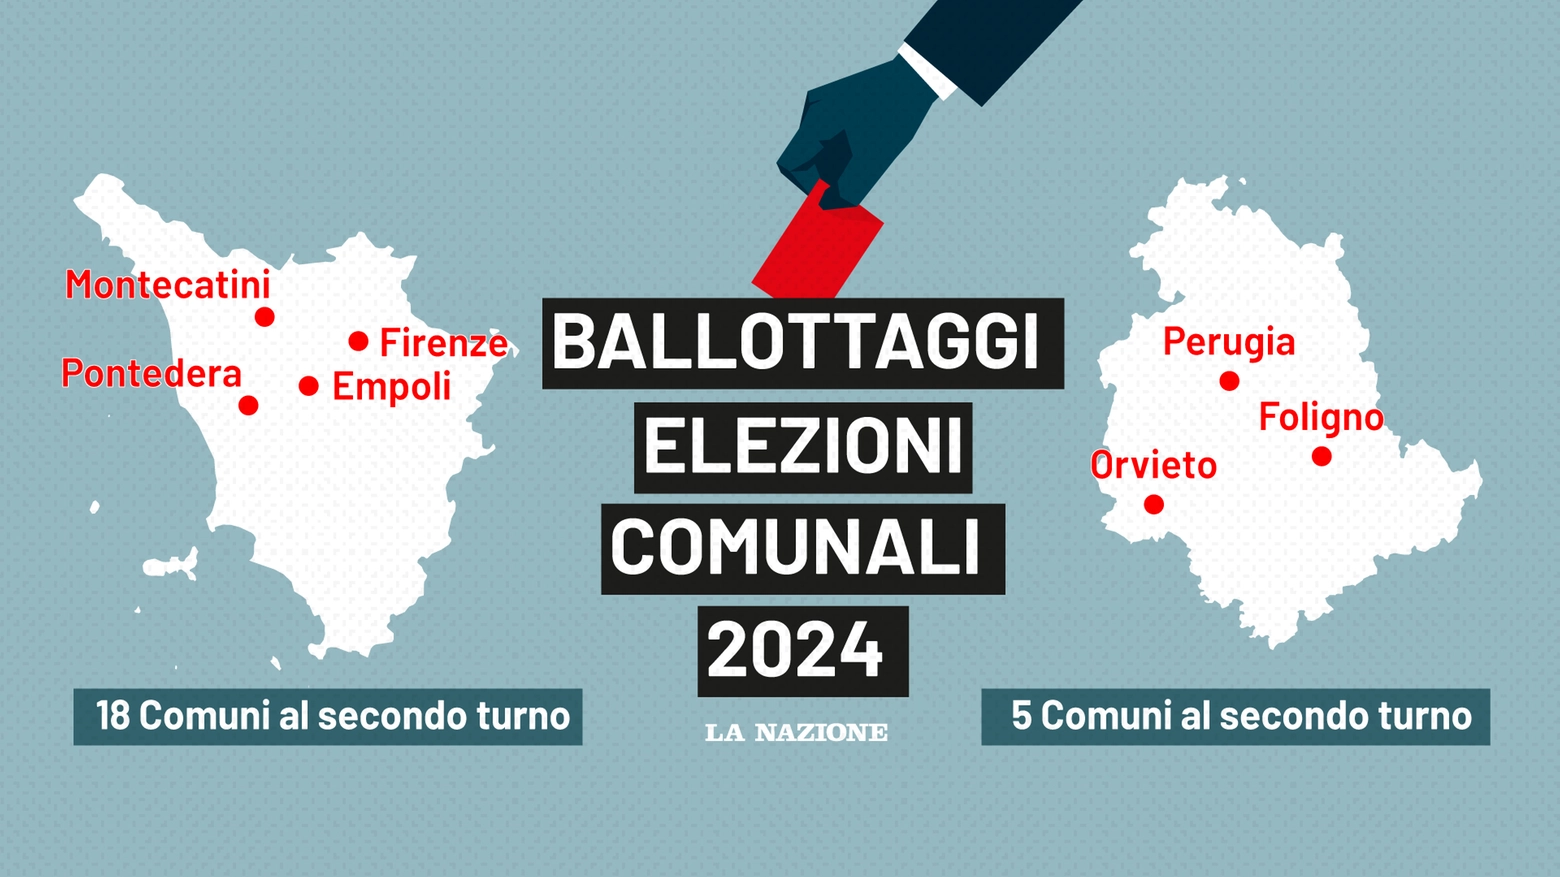 Ballottaggi elezioni comunali 2024, le sfide chiave in Toscana e Umbria